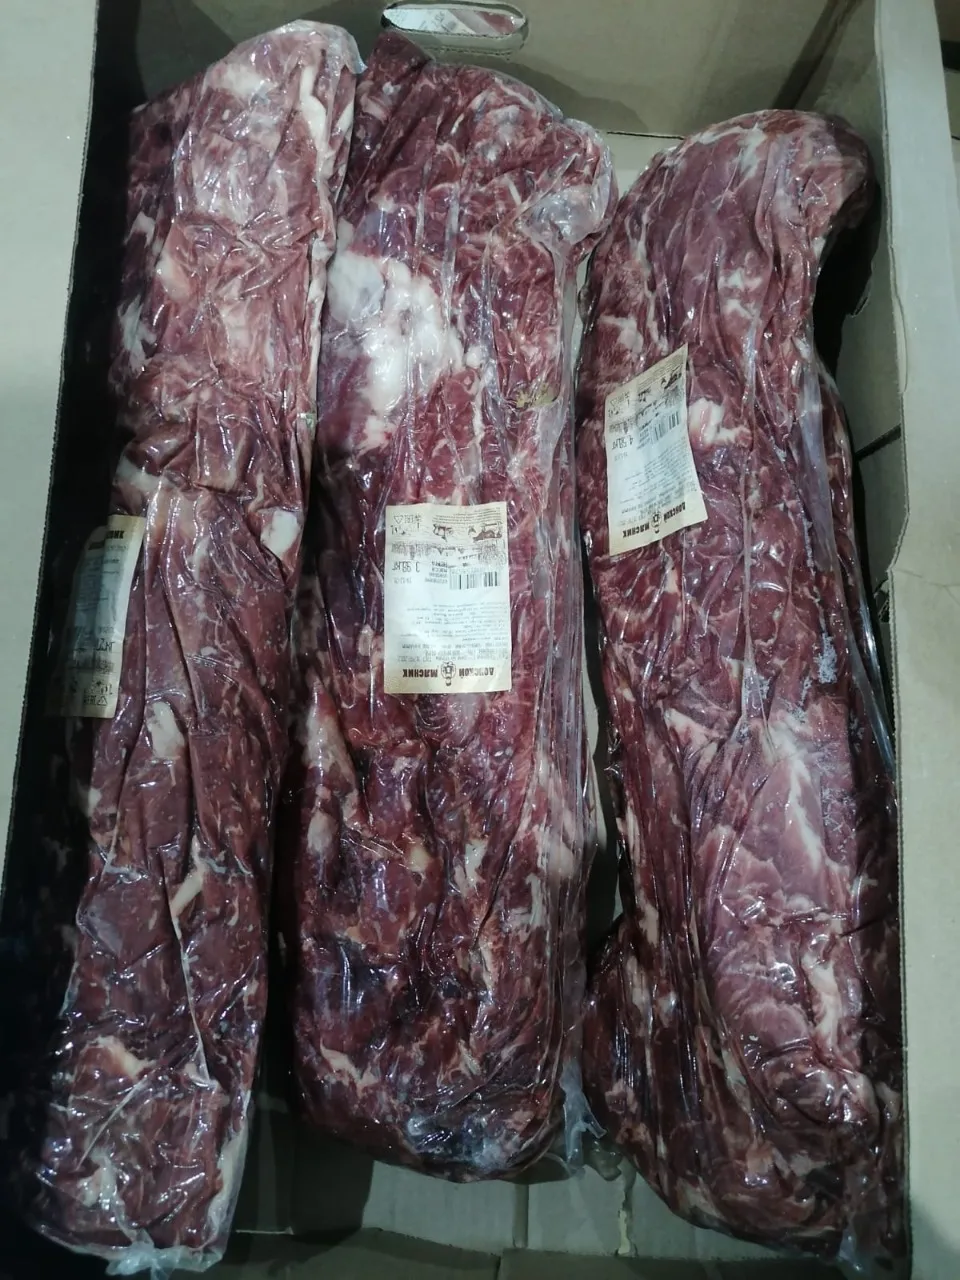 мясо говядины разделка в Краснодаре и Краснодарском крае